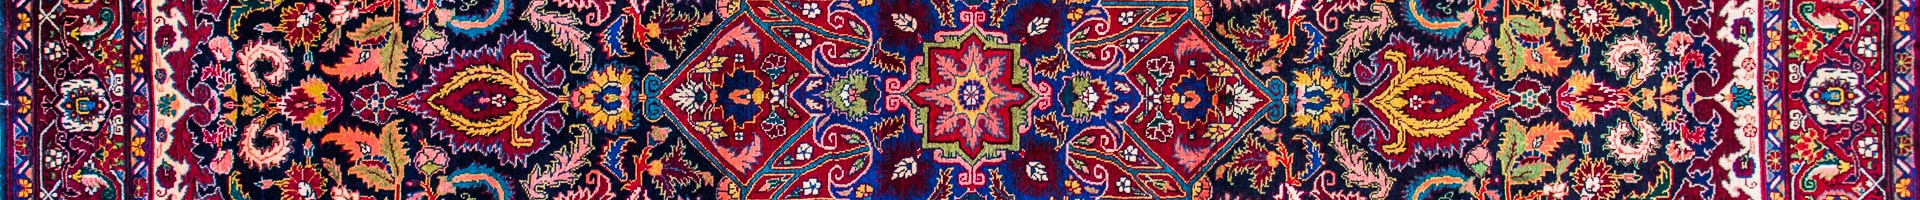 Heriz Persian Carpet Rug N1Carpet Montreal Canada Tapis Persan